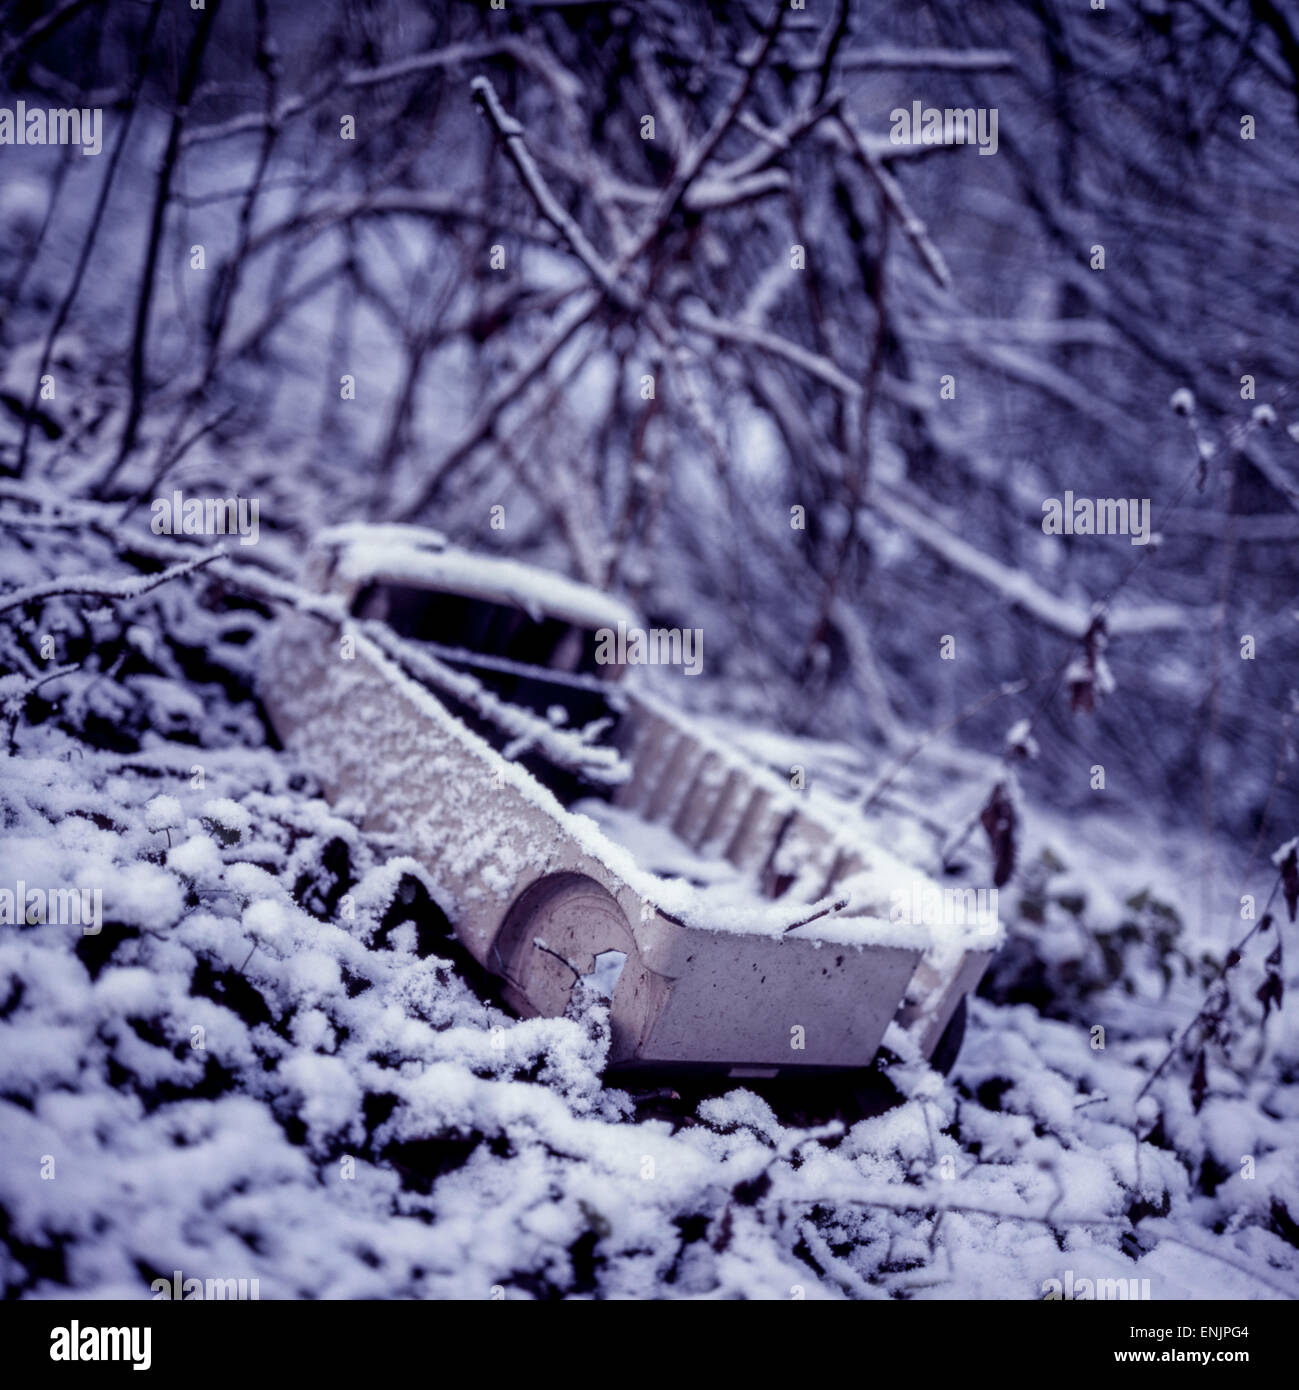 verworfen und verfallenden Staubsauger, Schnee, Tschechische Republik  Stockfotografie - Alamy